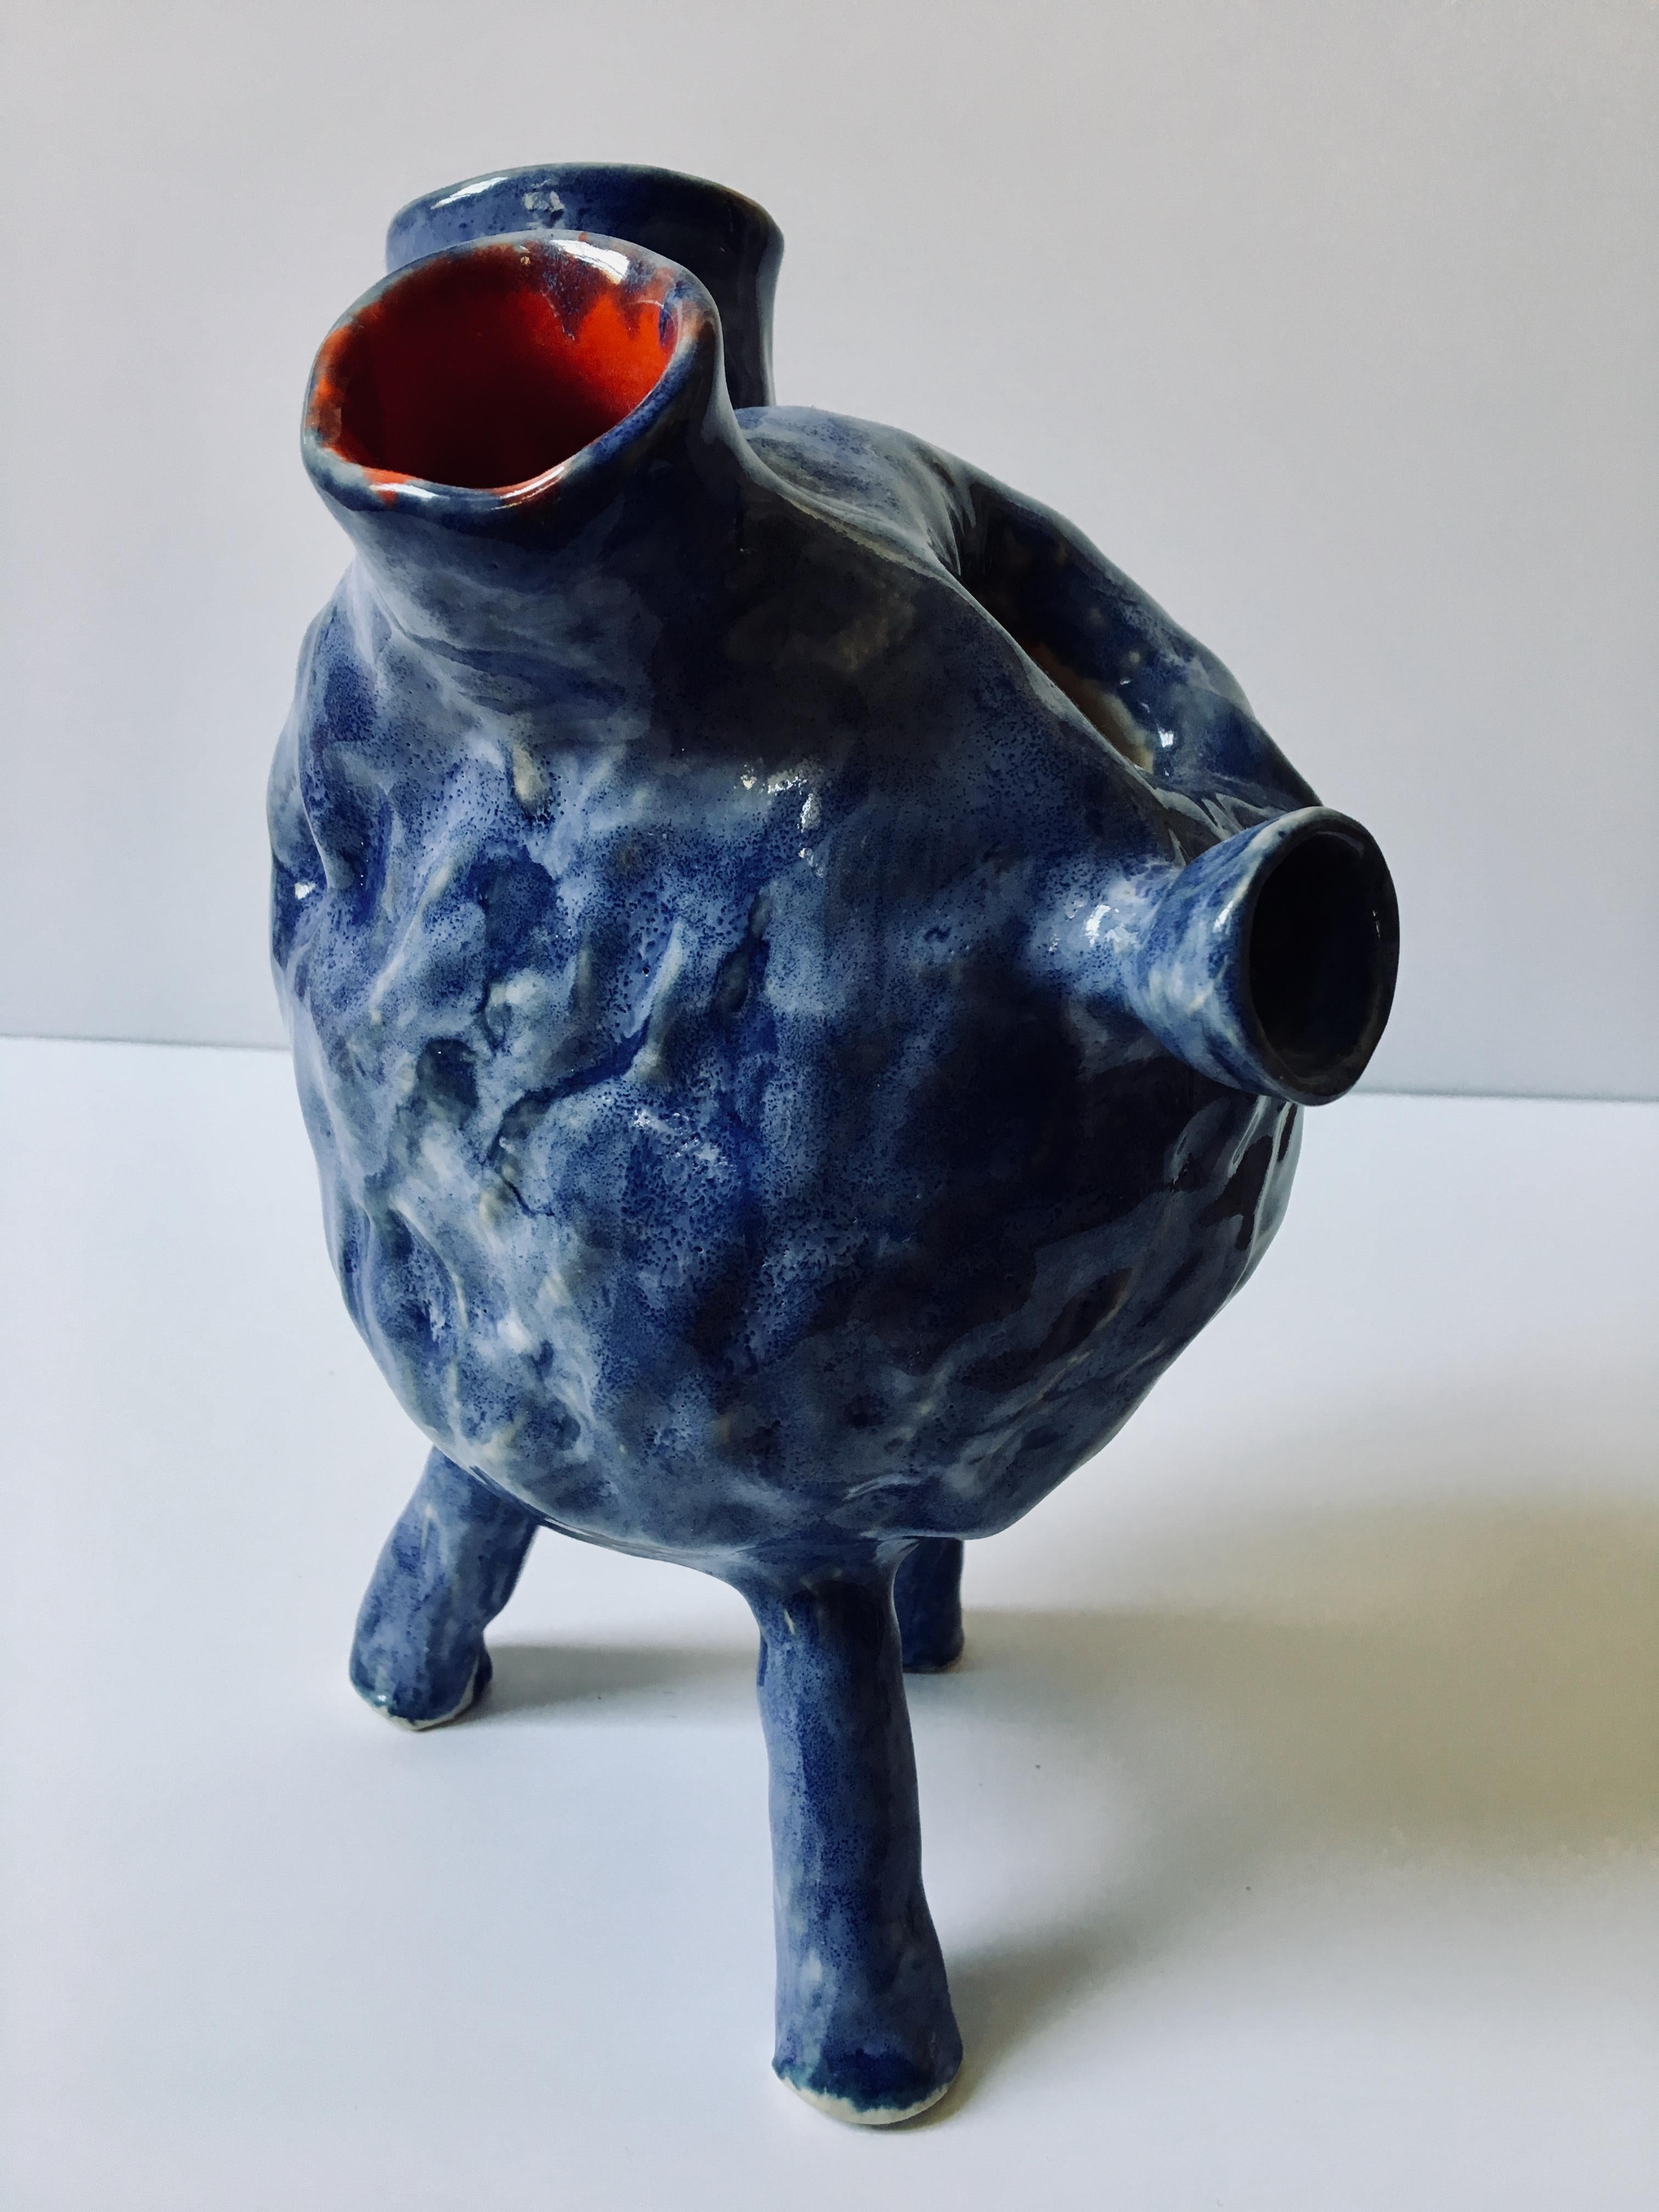 Sculpture ceramic vessel: Creature Medium No 4' 2